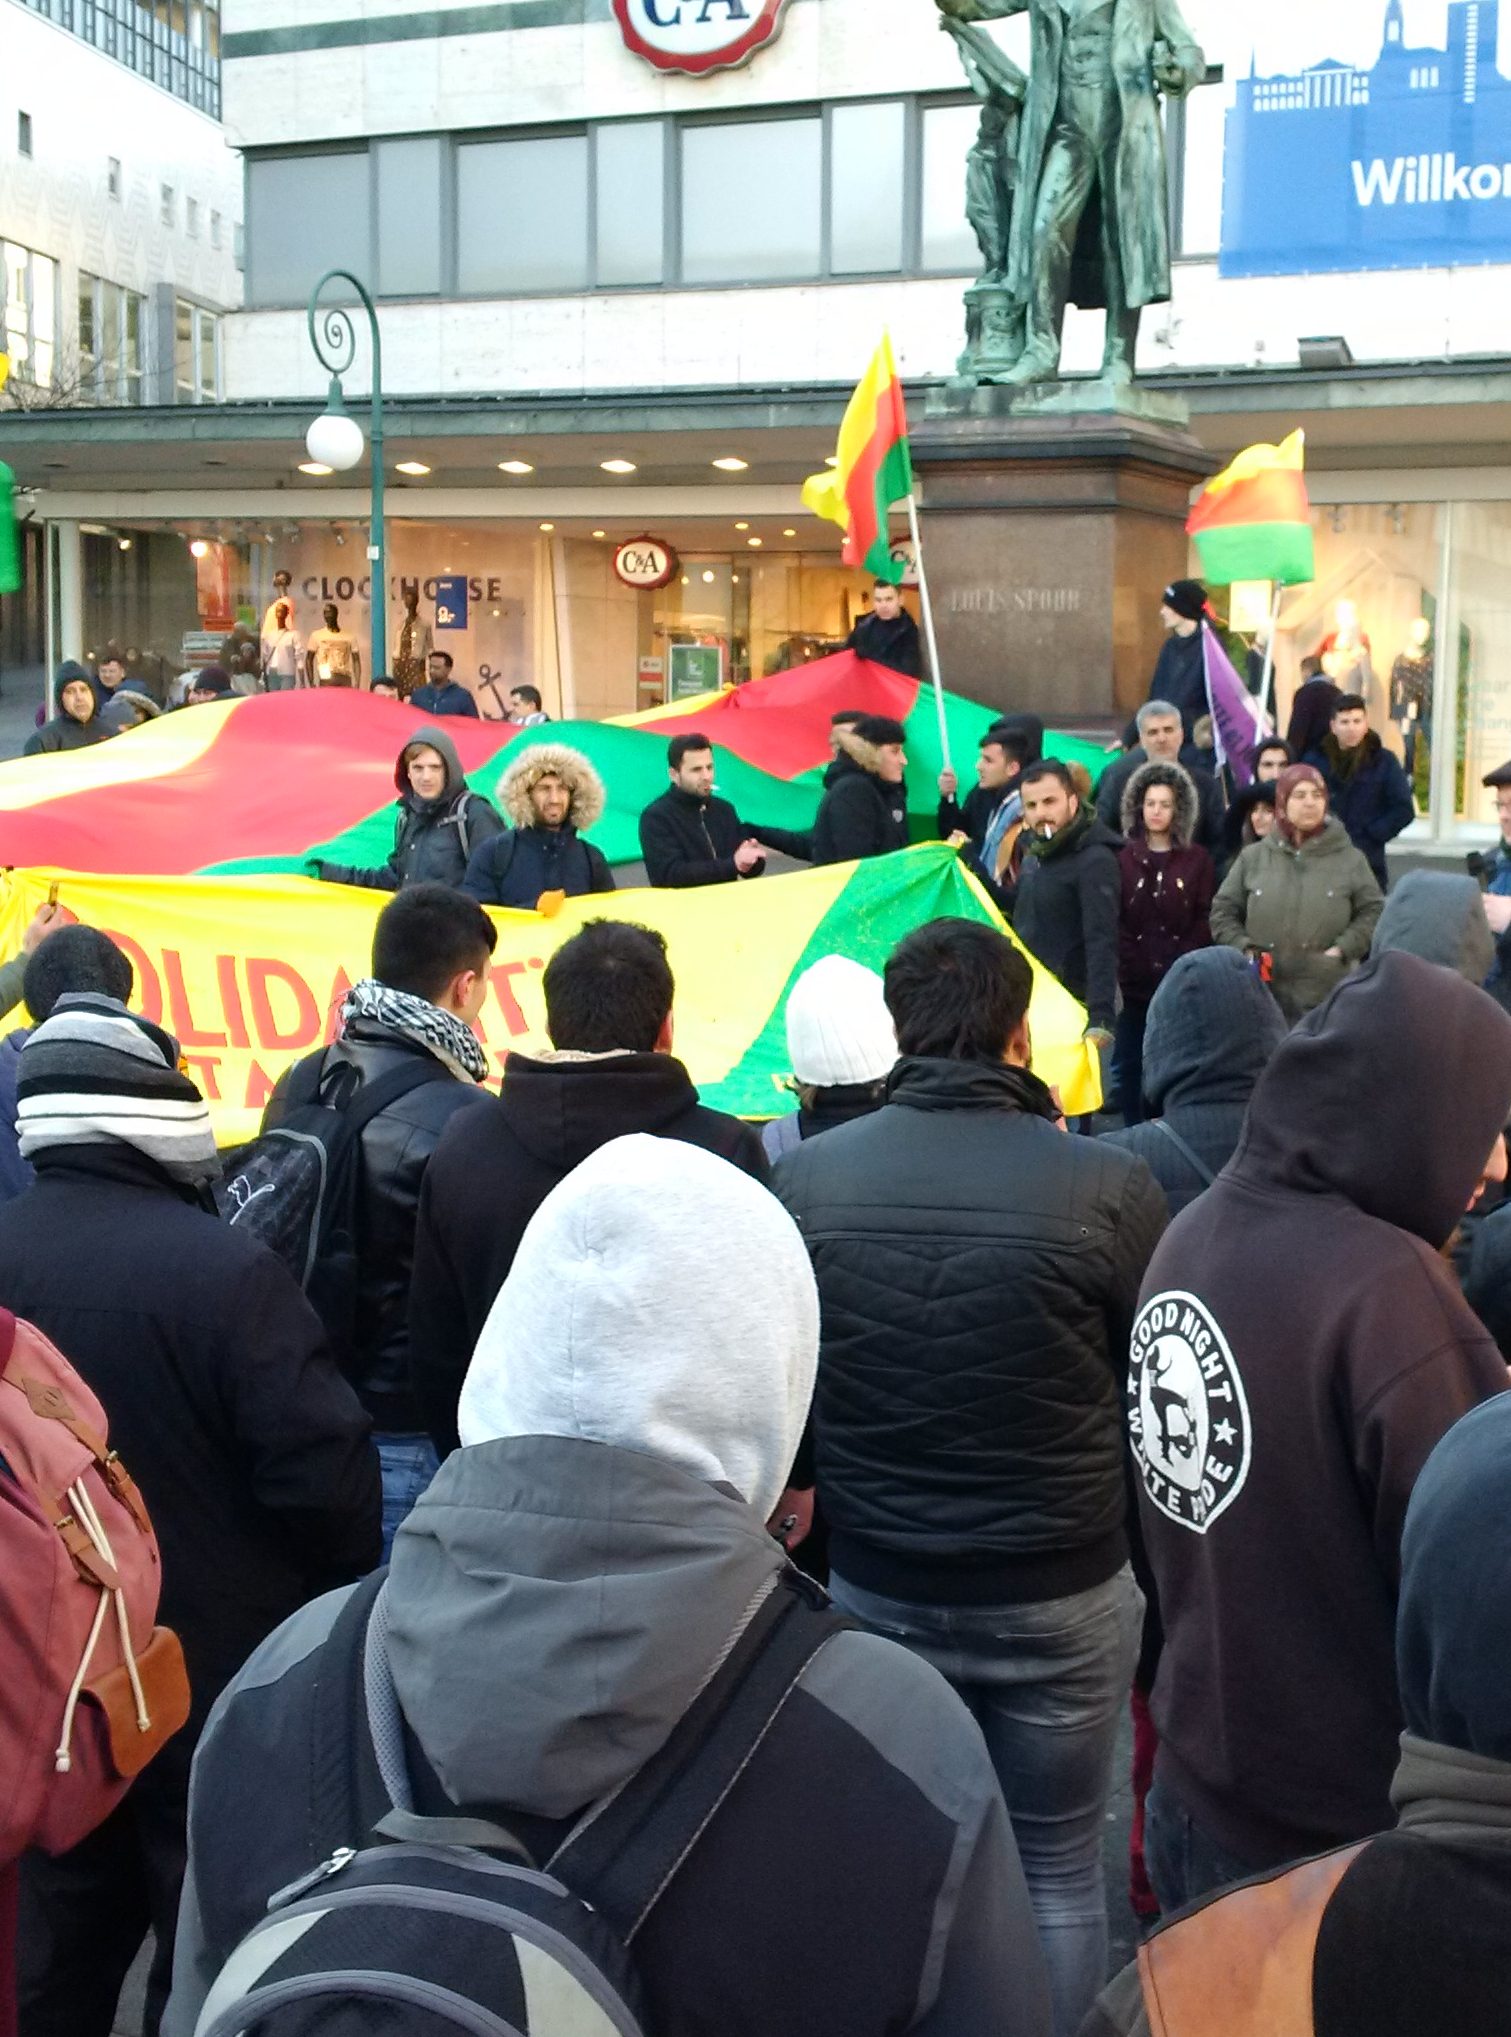 Kundgebung in Solidarität mit Afrin am Opernplatz